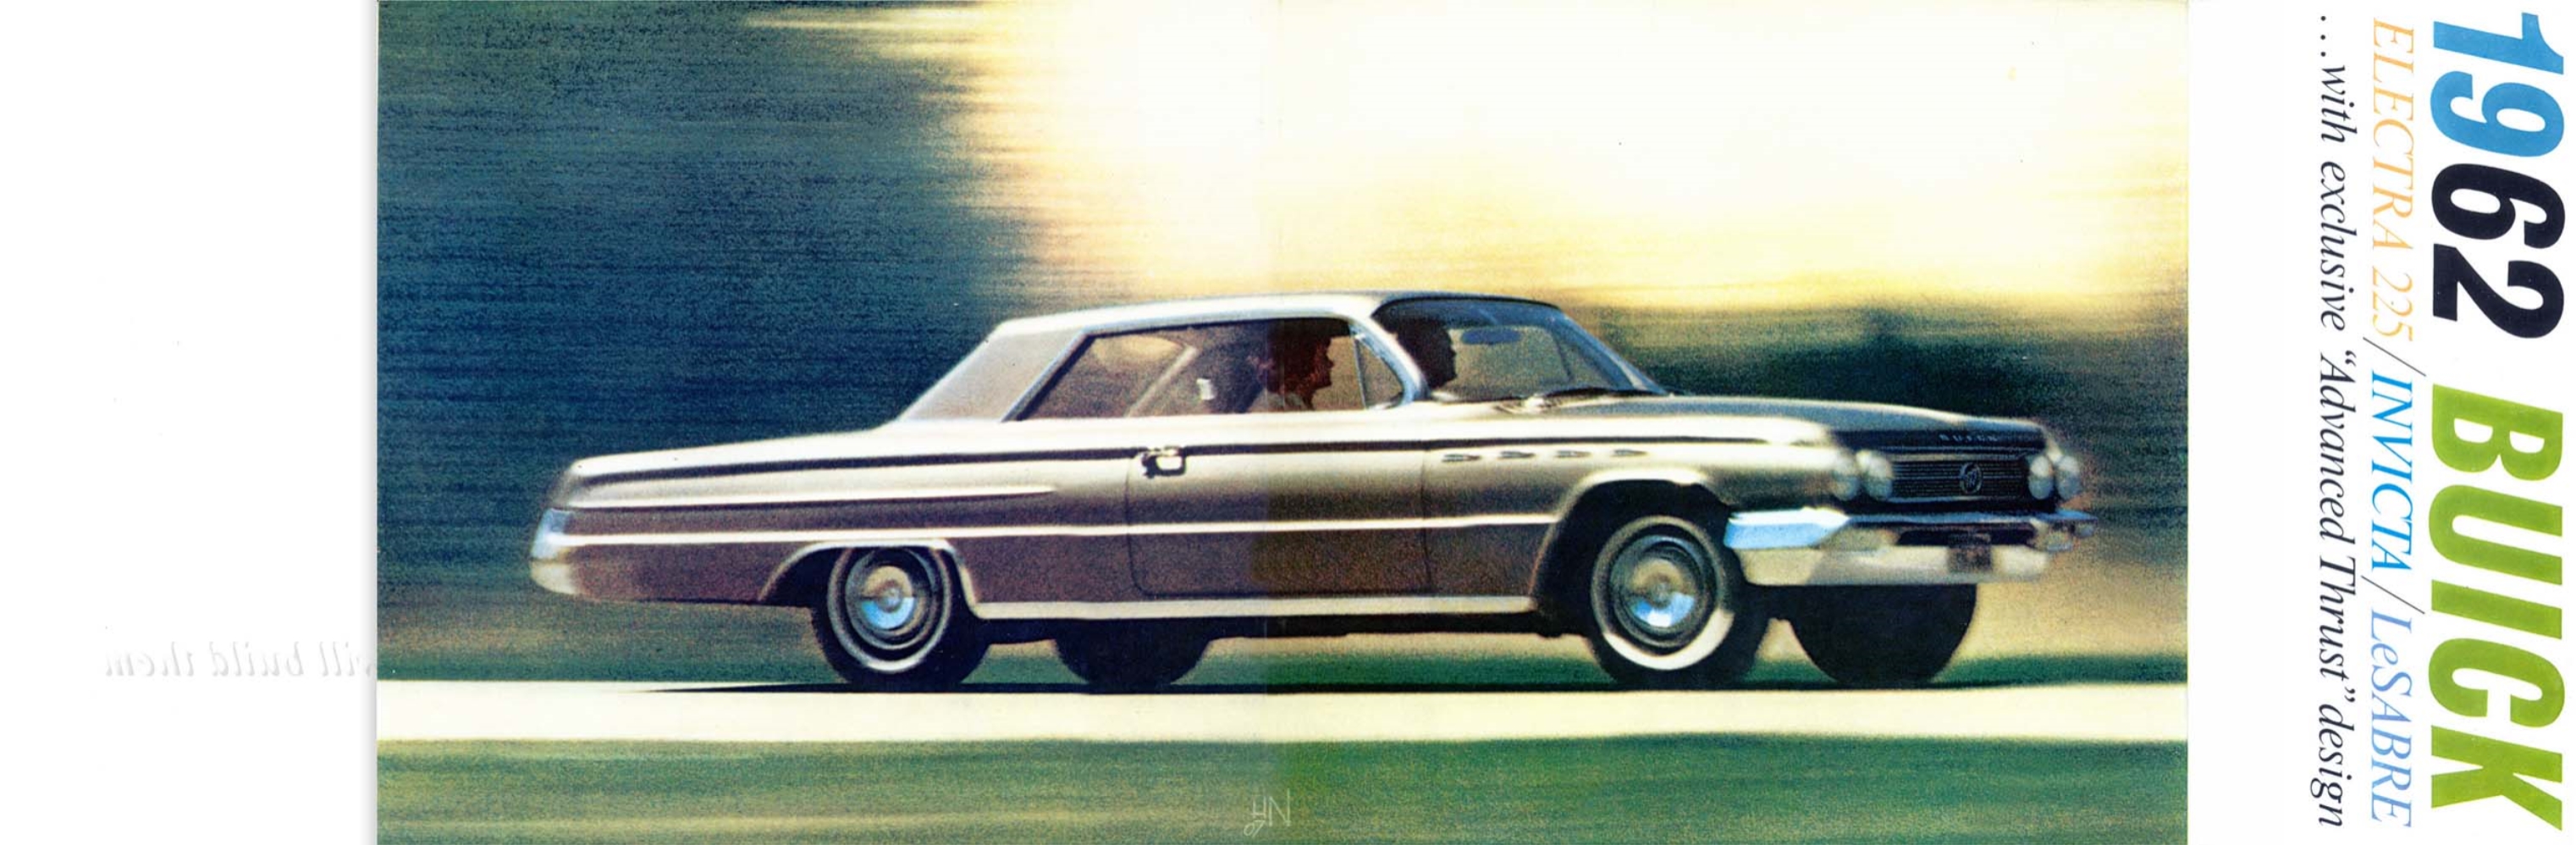 1962 Buick Full Line Prestige-18-19